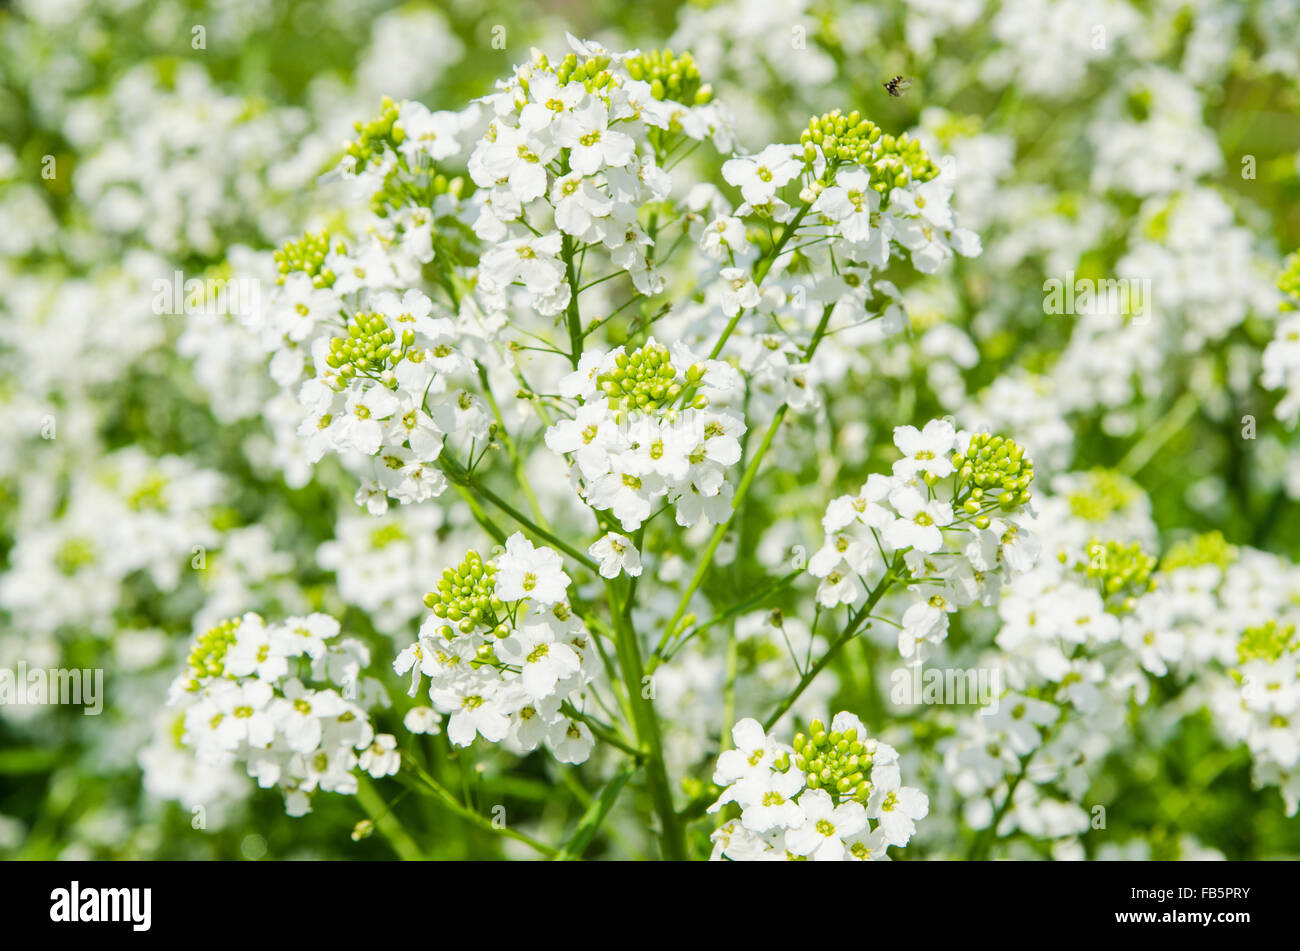 Small white flowers of horseradish, close-up Stock Photo